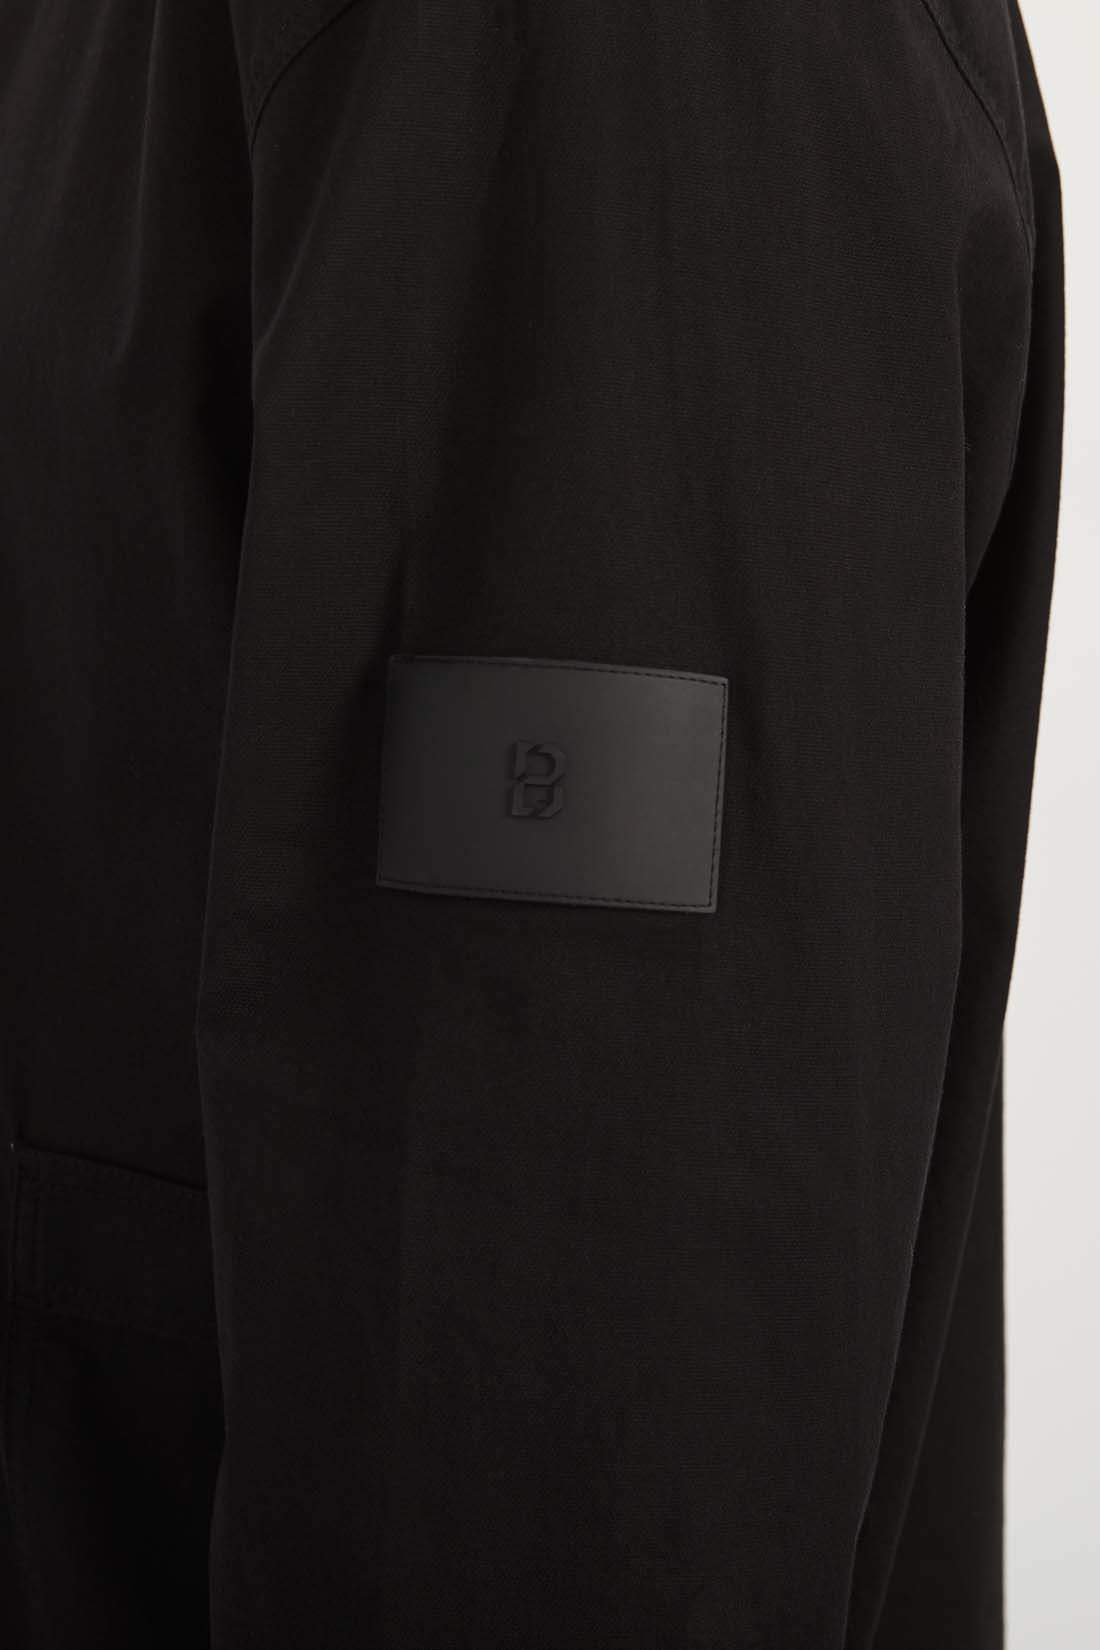 Свитшот мужской Baon B6122007 черный XL